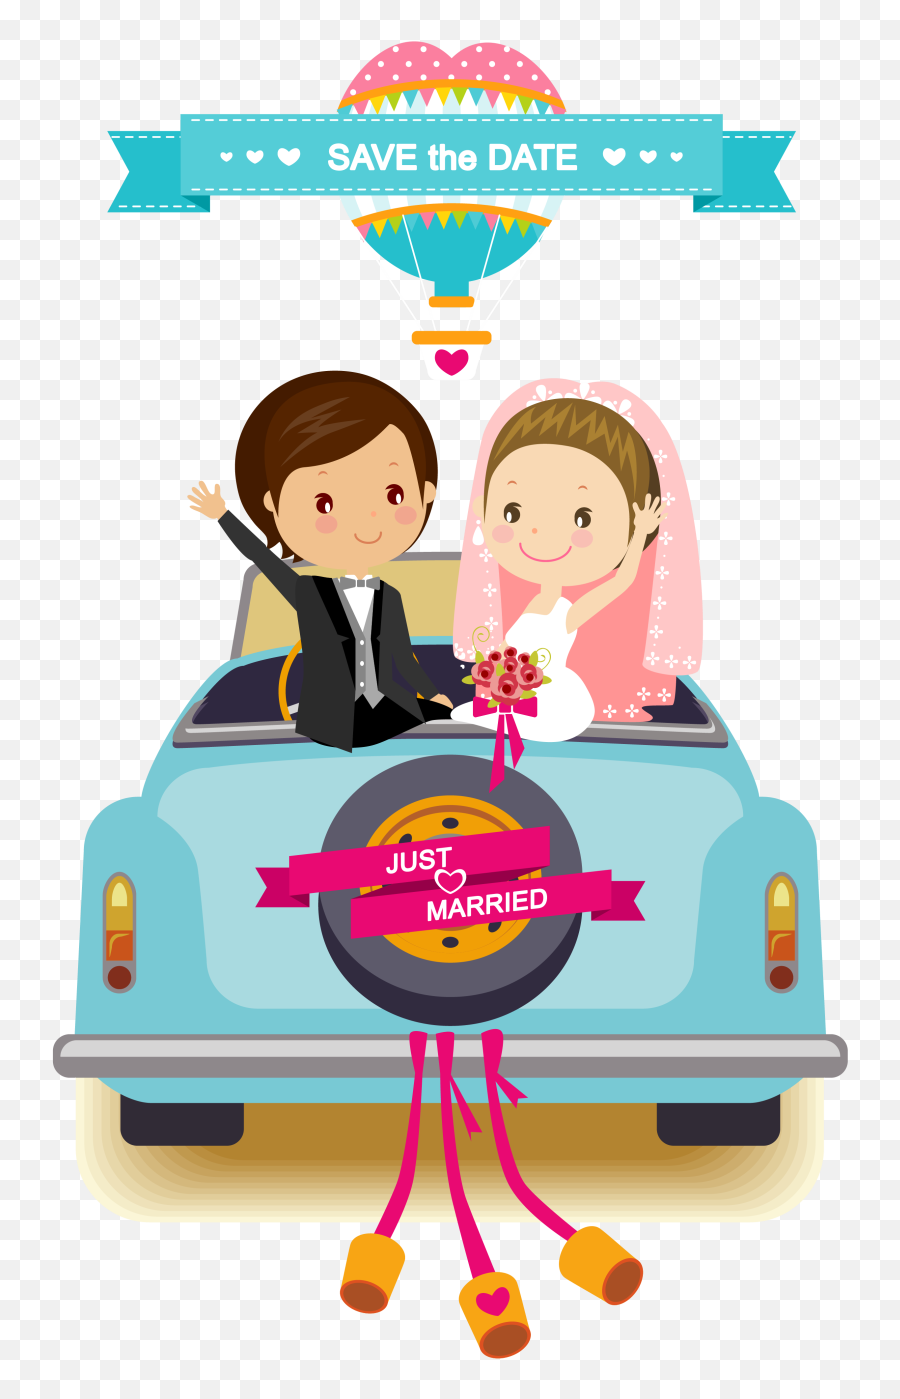 Related Image Gambar Pengantin Kartun Buku Tamu - Vector Cartoon Wedding Png,Car Cartoon Png